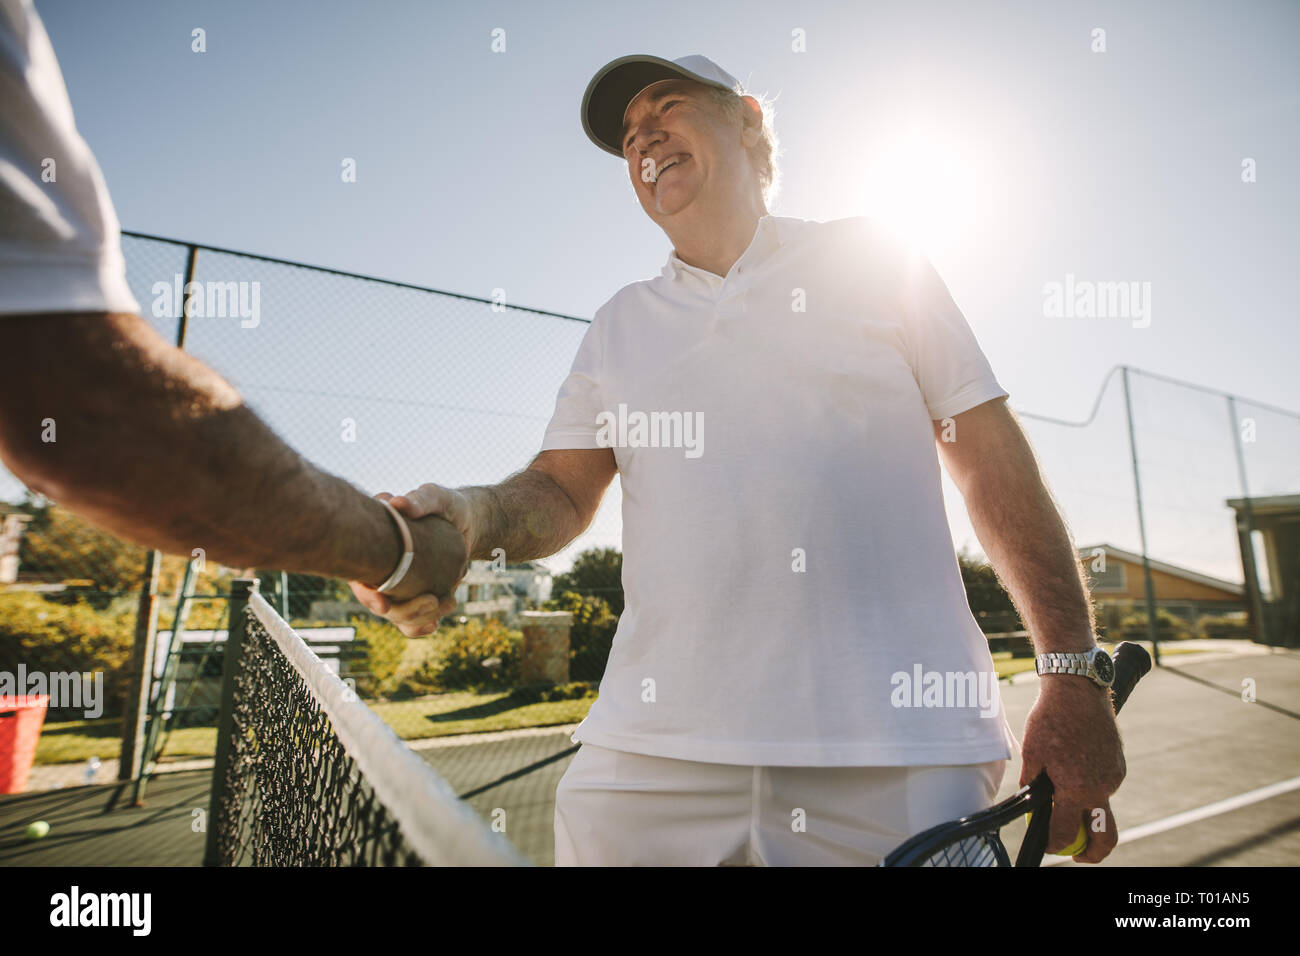 Man shaking hands debout sur un court de tennis. Accueil tennis player son adversaire debout près du filet avec le soleil en arrière-plan. Banque D'Images